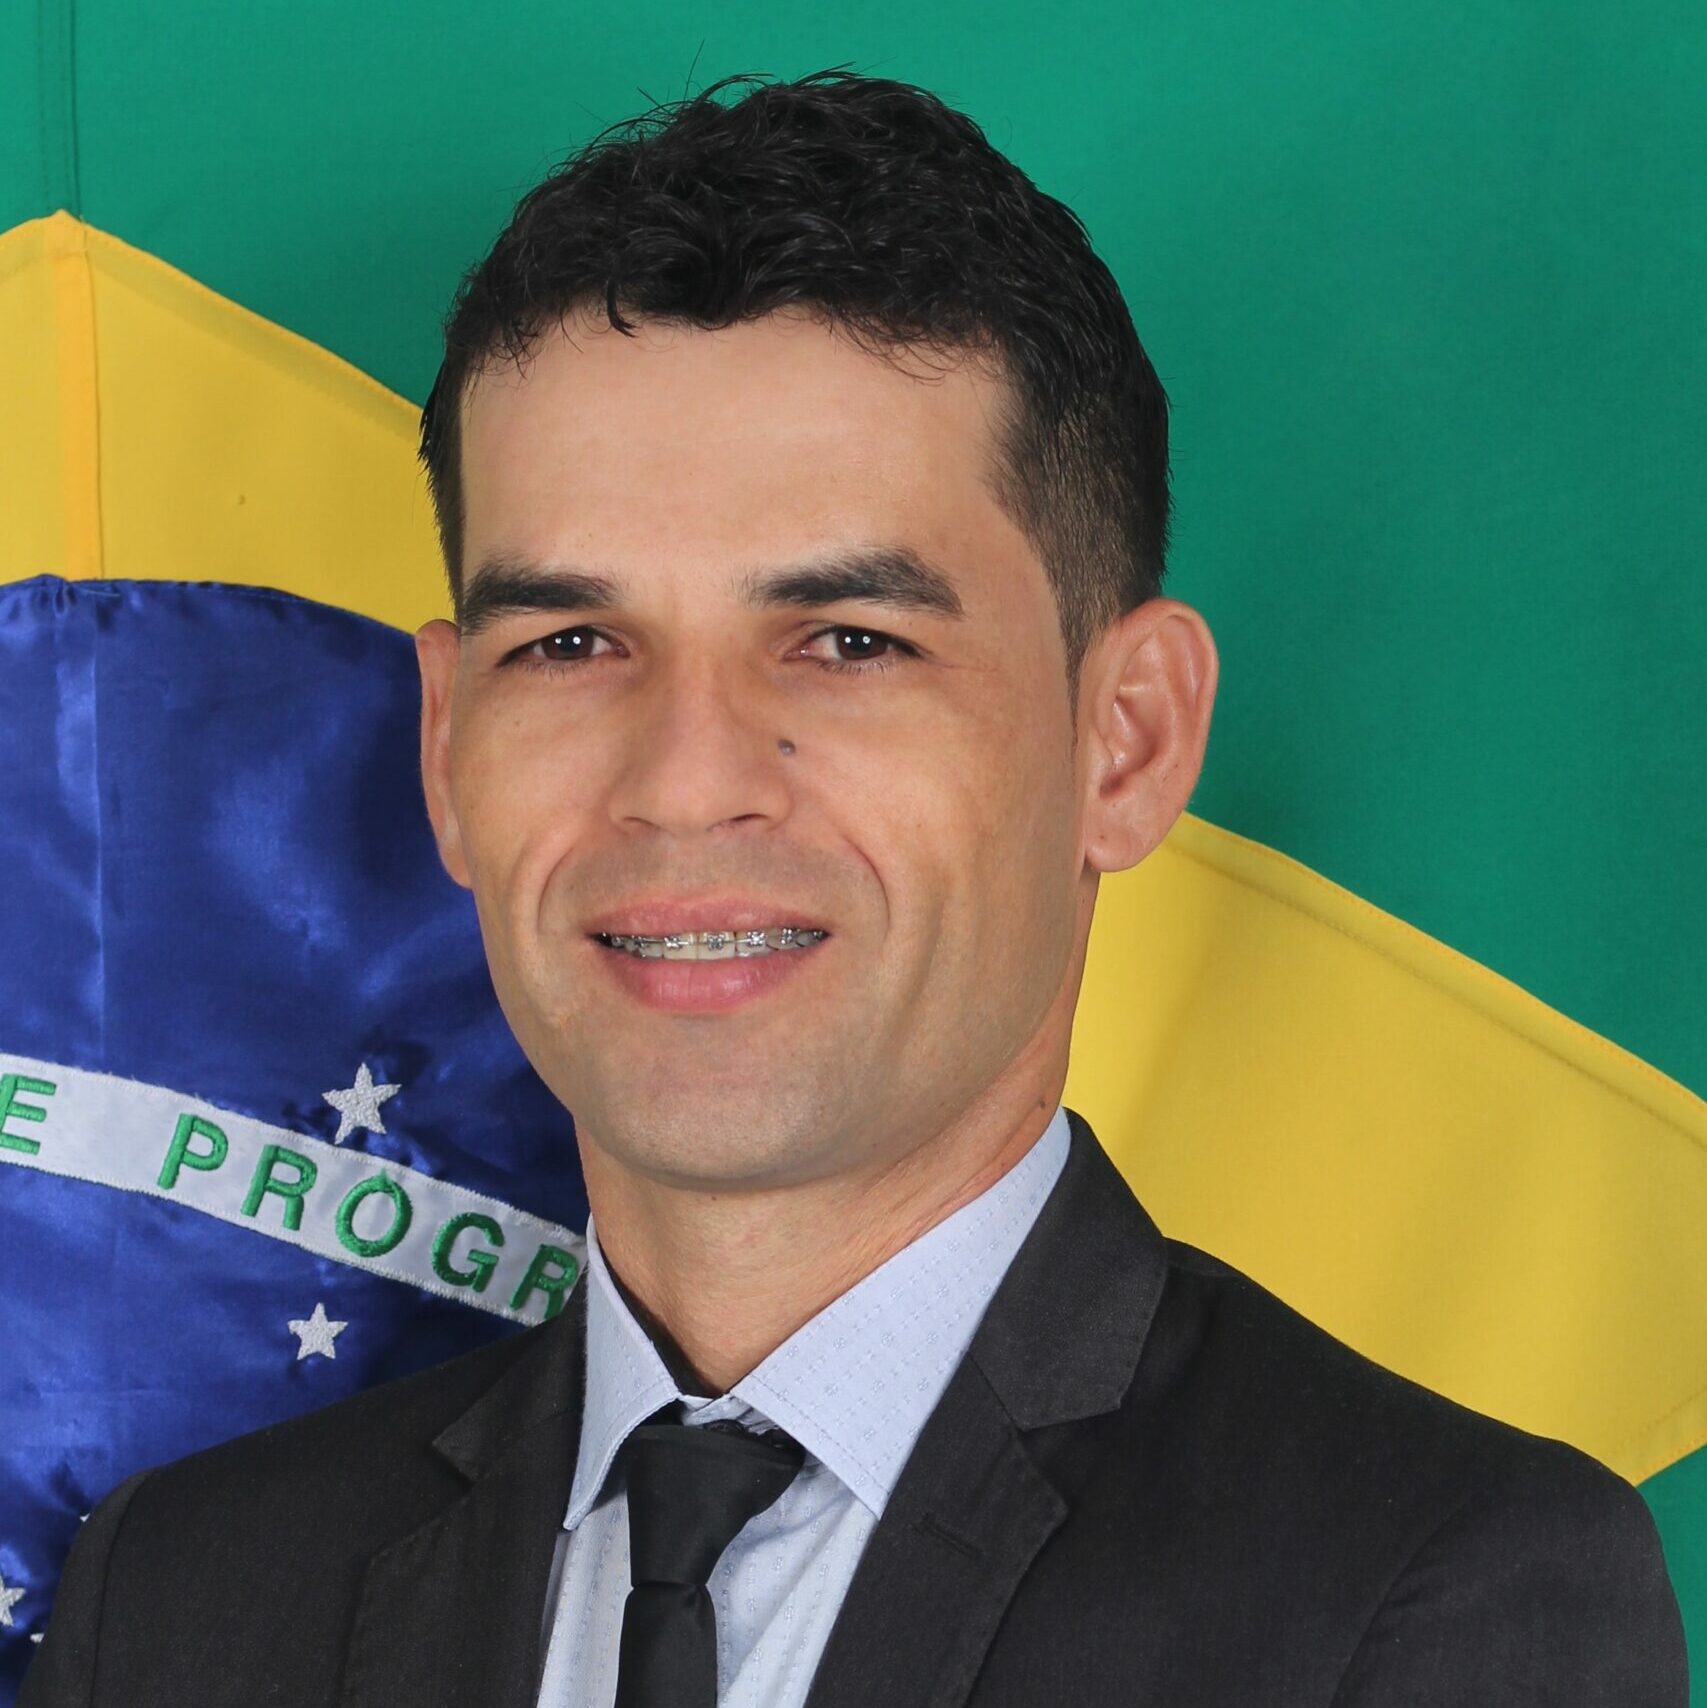 Ademilson Carlos das Neves